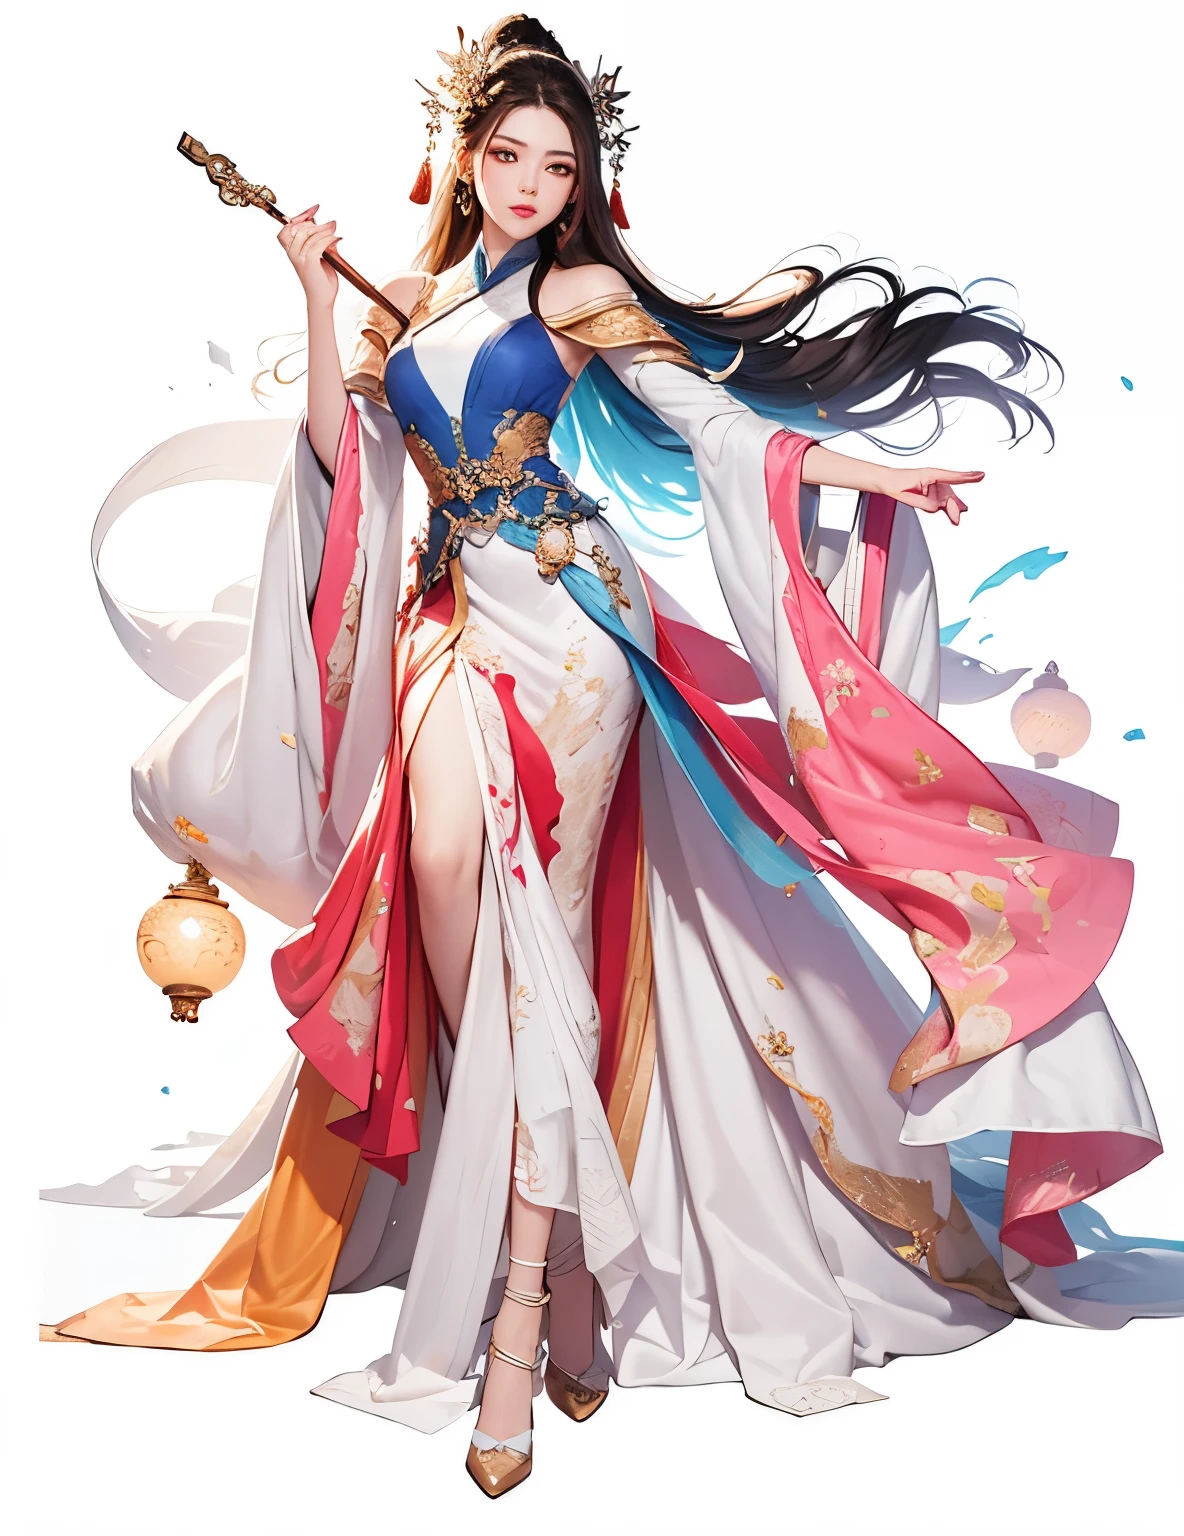 1 trägt ein rotes Kleid、Mädchen mit wallendem Haar, schöne Fantasiekönigin, Schönheit retten,inspiriert von Lan Ying, Ganzkörper-Xianxia, von Qu Leilei, Inspiriert von Zhu Lian, von Bäumen inspiriert, Inspiriert von Qiu Ying, heise jinyao, alte chinesische Prinzessin, wallendes Haar und Kleid, ((schöne Fantasiekönigin)),((reich und bunt)),(Tang-Dynastie), Meisterwerk, beste Qualität, Schönes Gemälde, high level of Detail,(Lärm eliminieren :0.6), [Tintenbeständig],(Tintenbrechung), ,Detail,leerer Hintergrund,(beste Qualität,  extremely Detailed CG unified 8k wallpaper, kompetent, beste Qualität, super Detail),(Blaues Blinklicht),Oberkörper in Seide gehüllt,((((hübsches Gesicht)))